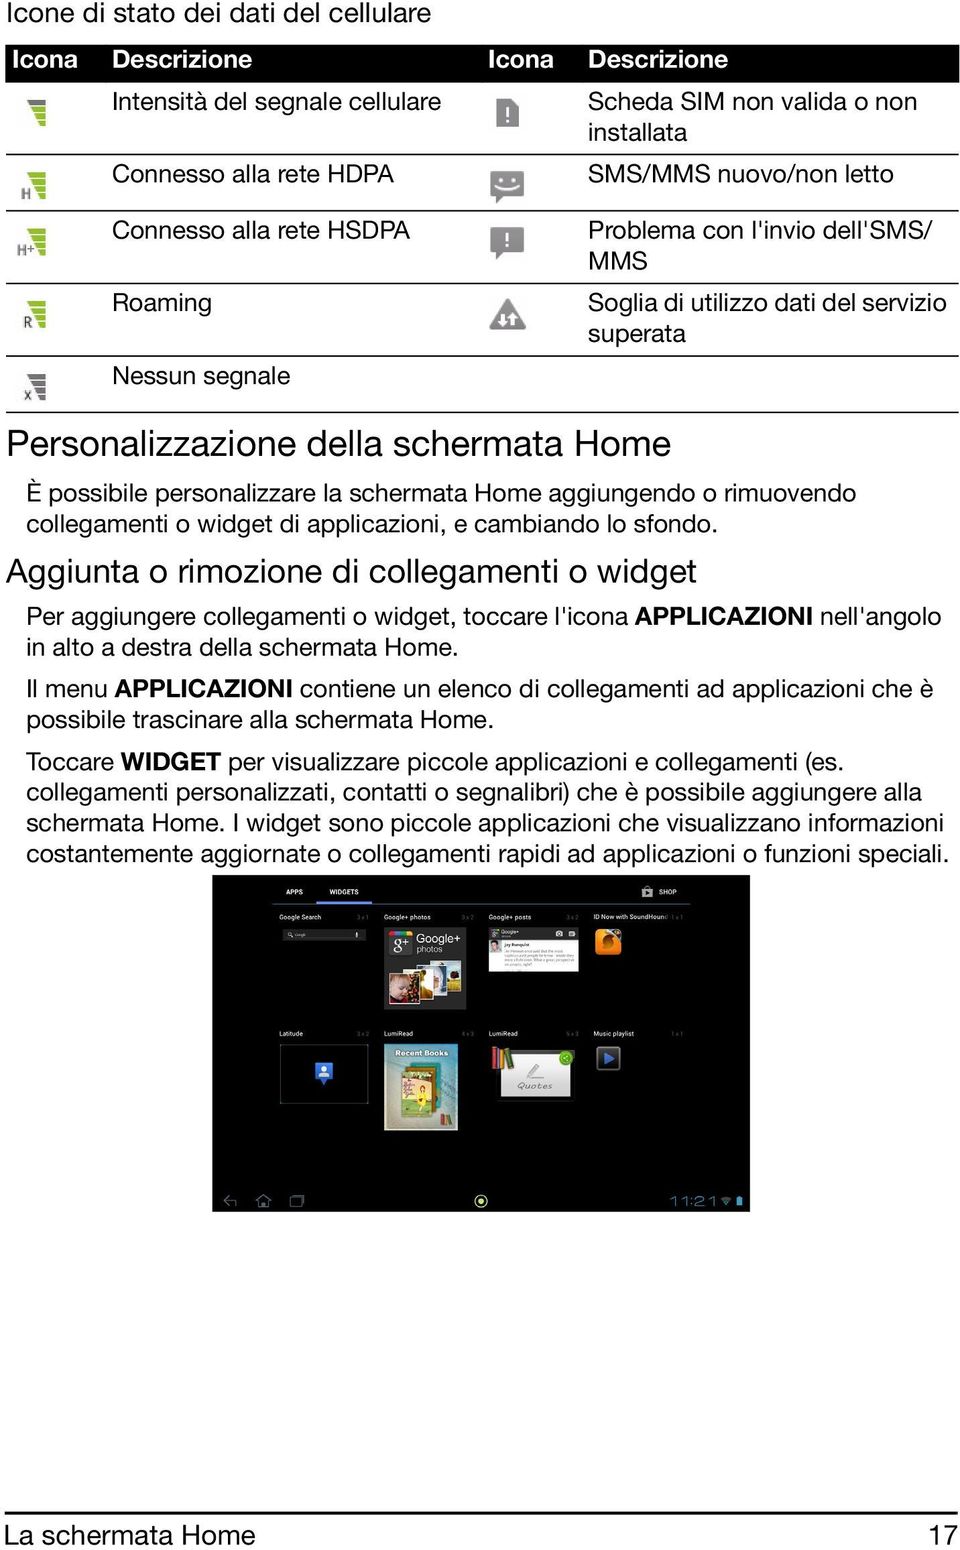 schermata Home aggiungendo o rimuovendo collegamenti o widget di applicazioni, e cambiando lo sfondo.